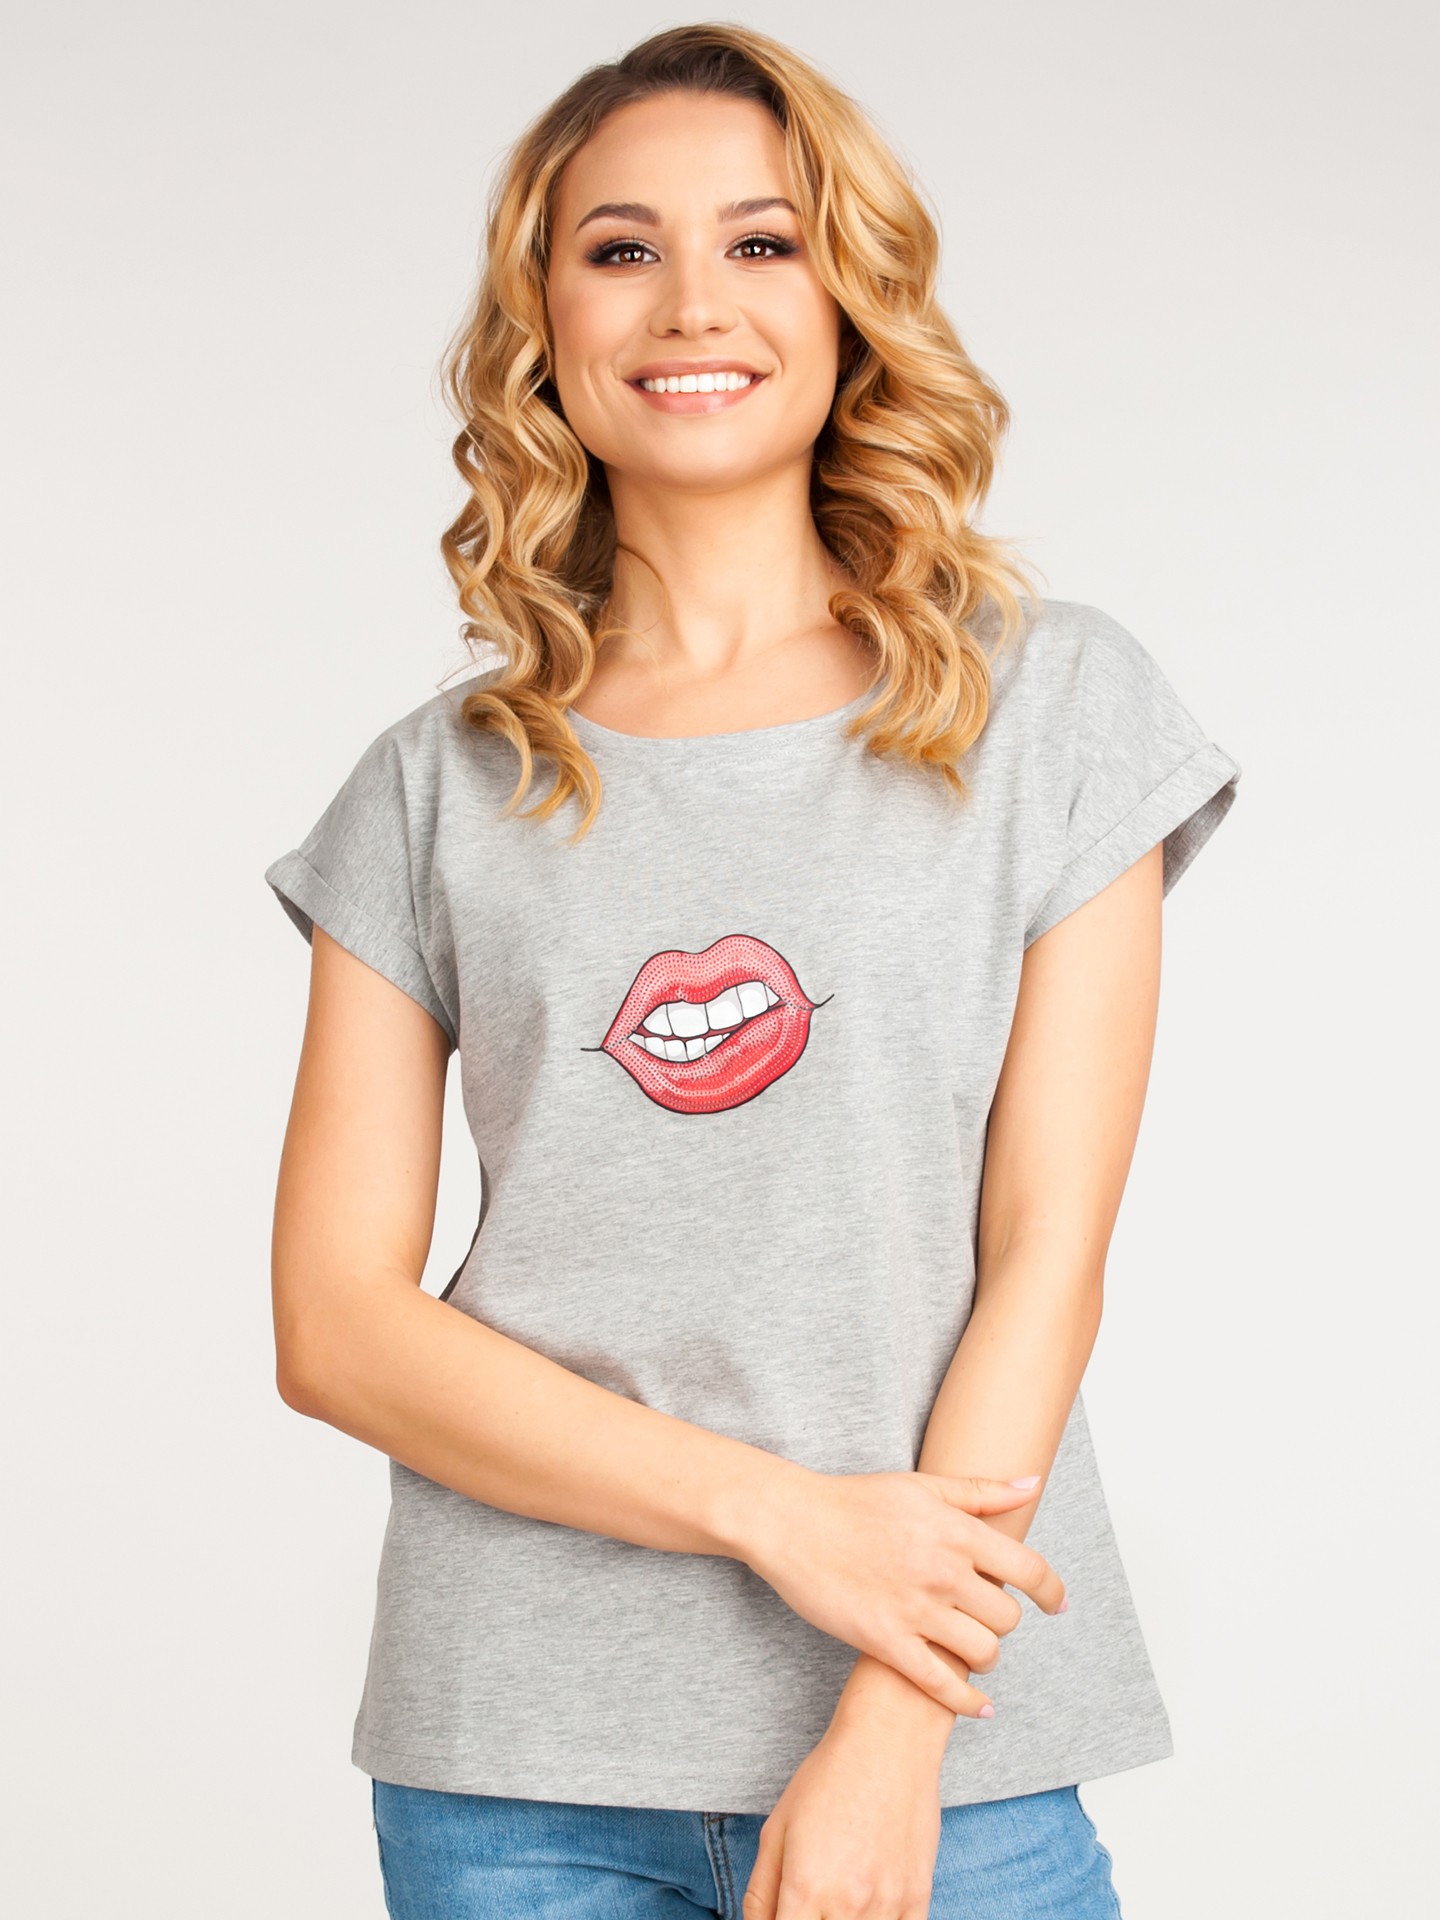 Yoclub Woman's Cotton T-shirt PKK-0099K-A110